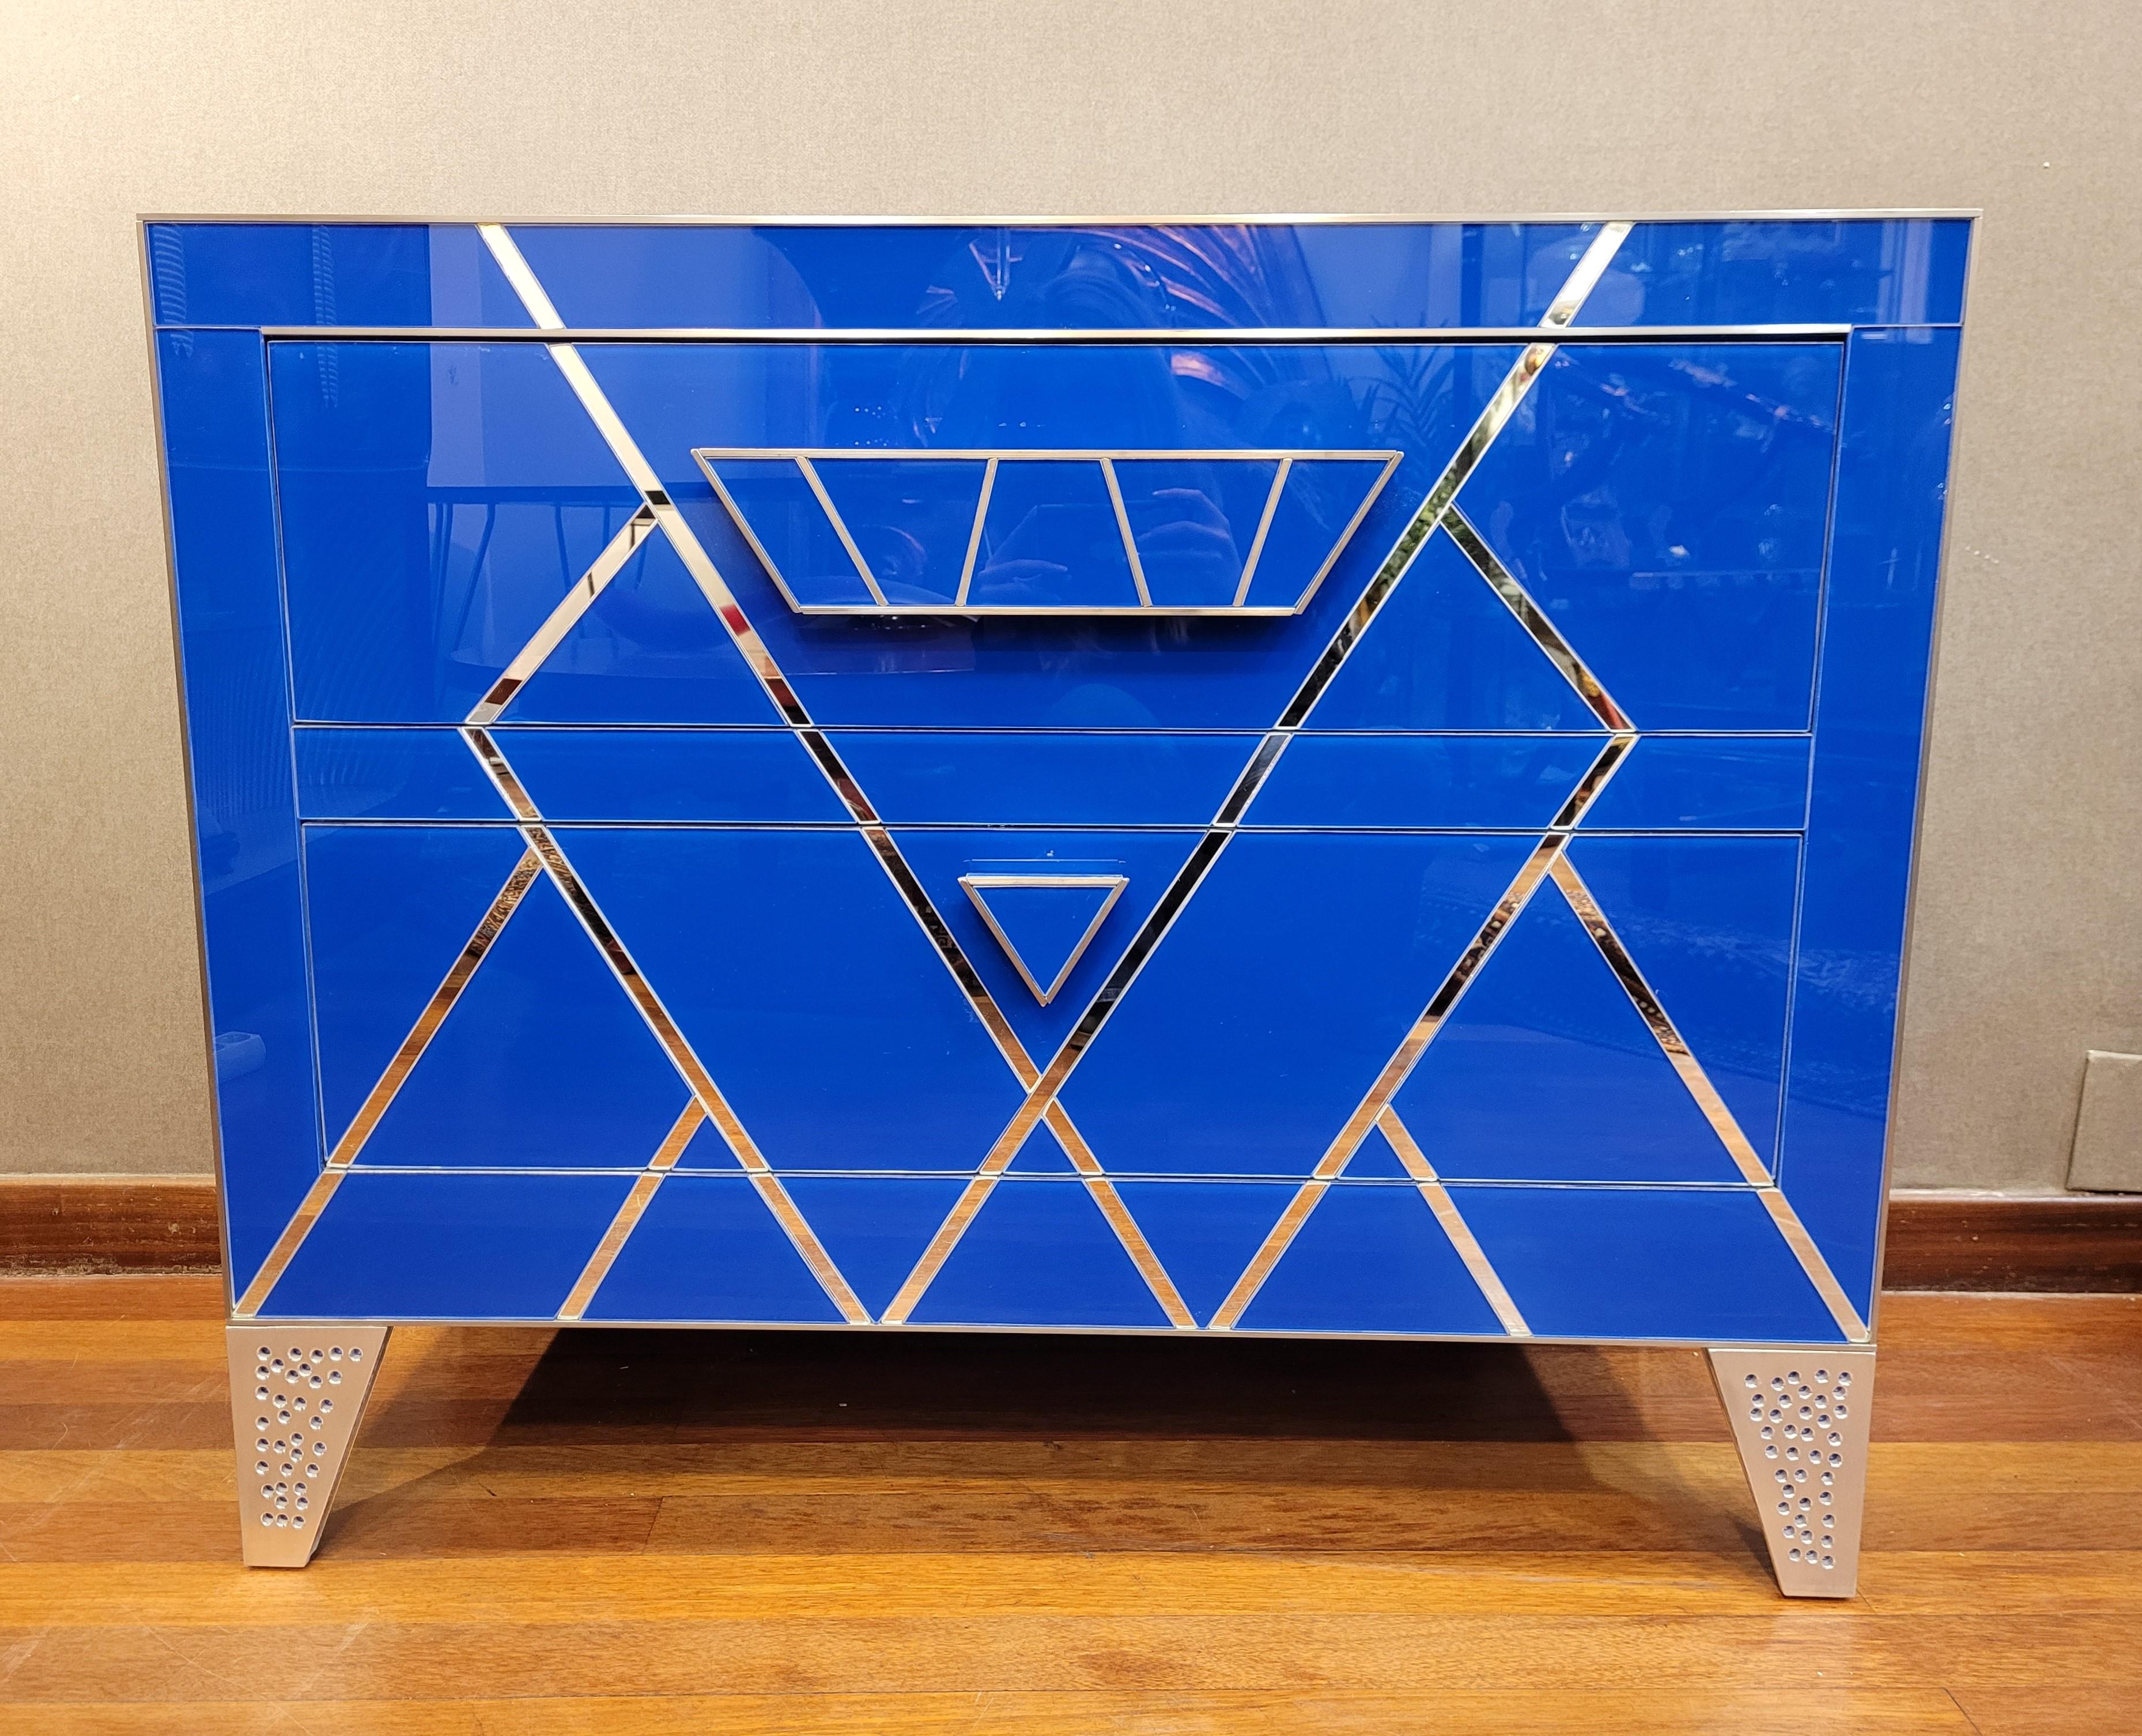 Exceptionnelle paire de commodes fabriquées à la main avec des plaques de verre bleu italien. Design géométrique exclusif, basé sur des formes triangulaires et leurs tangentes, qui semblent former la silhouette d'un diamant sur le devant. Chaque